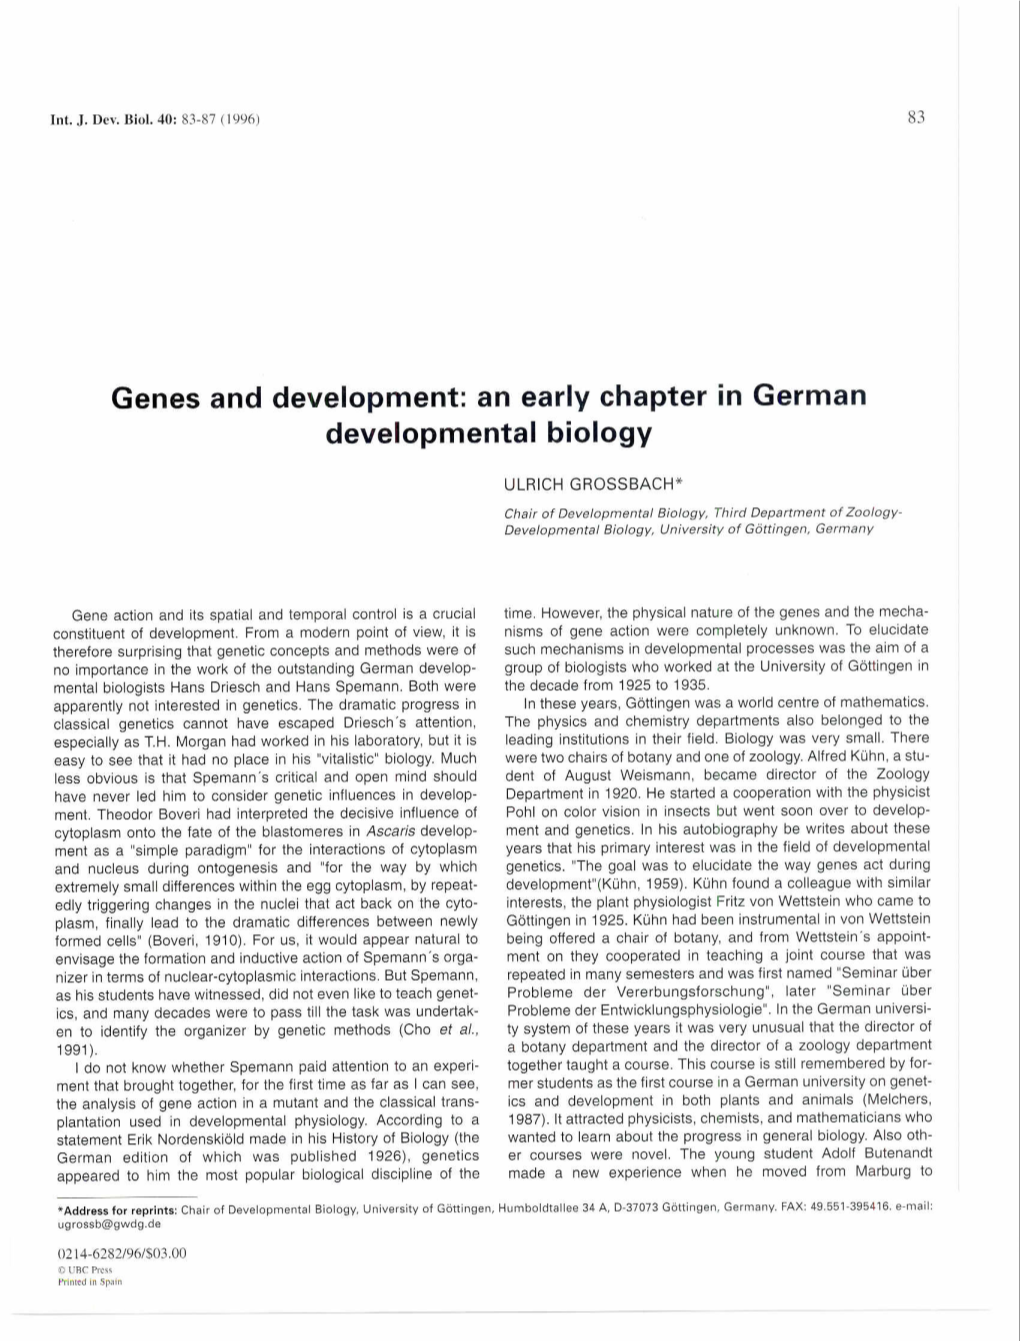 Genes and Development: an Early Chapter in German Developmental Biology